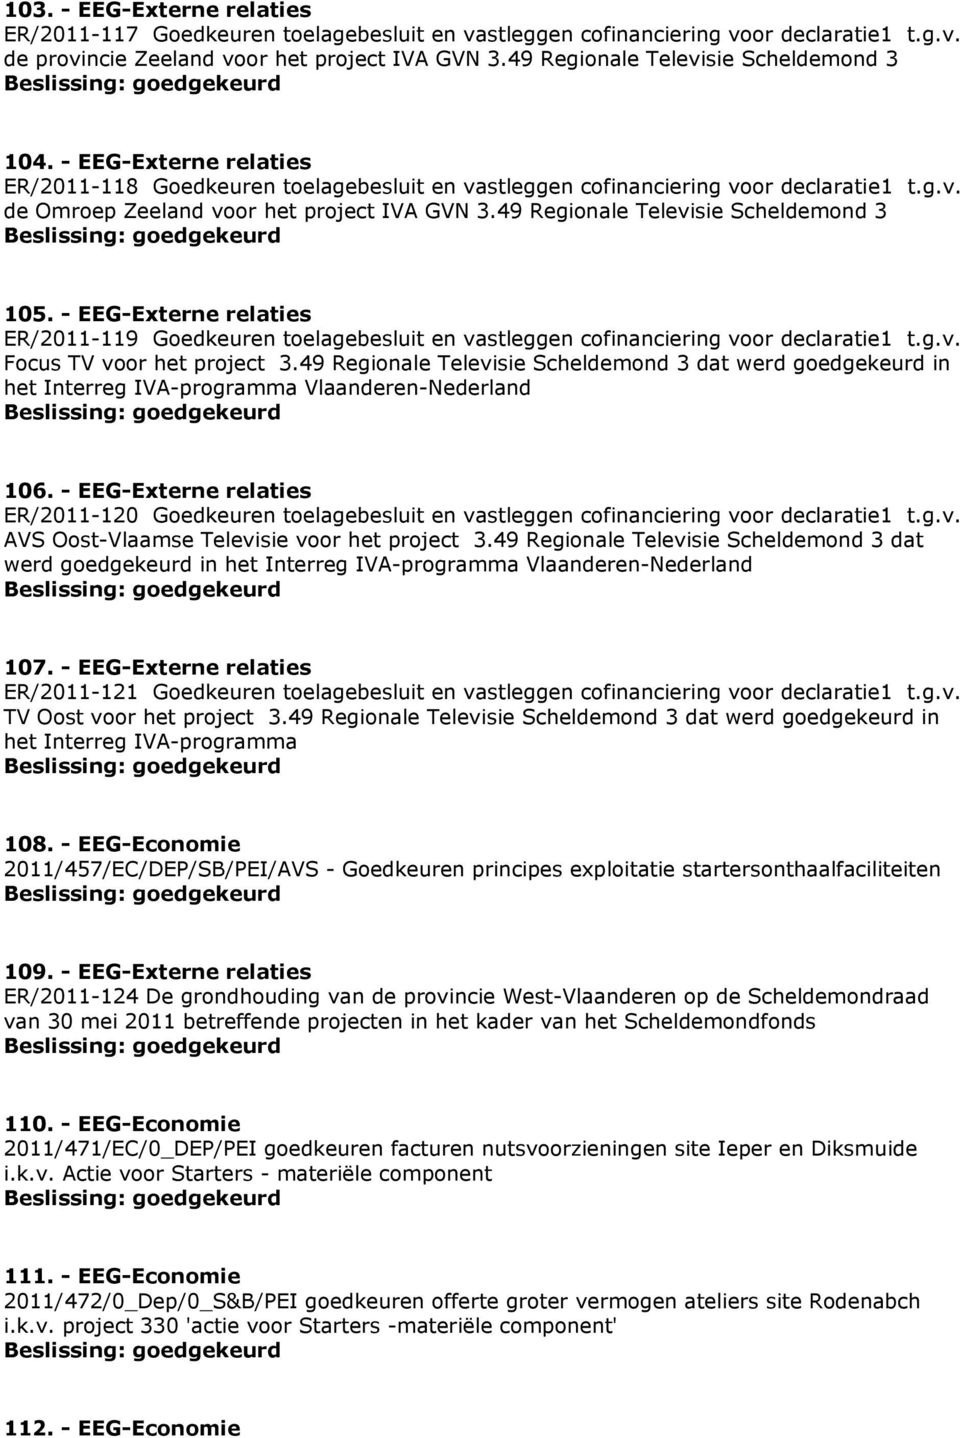 49 Regionale Televisie Scheldemond 3 105. - EEG-Externe relaties ER/2011-119 Goedkeuren toelagebesluit en vastleggen cofinanciering voor declaratie1 t.g.v. Focus TV voor het project 3.